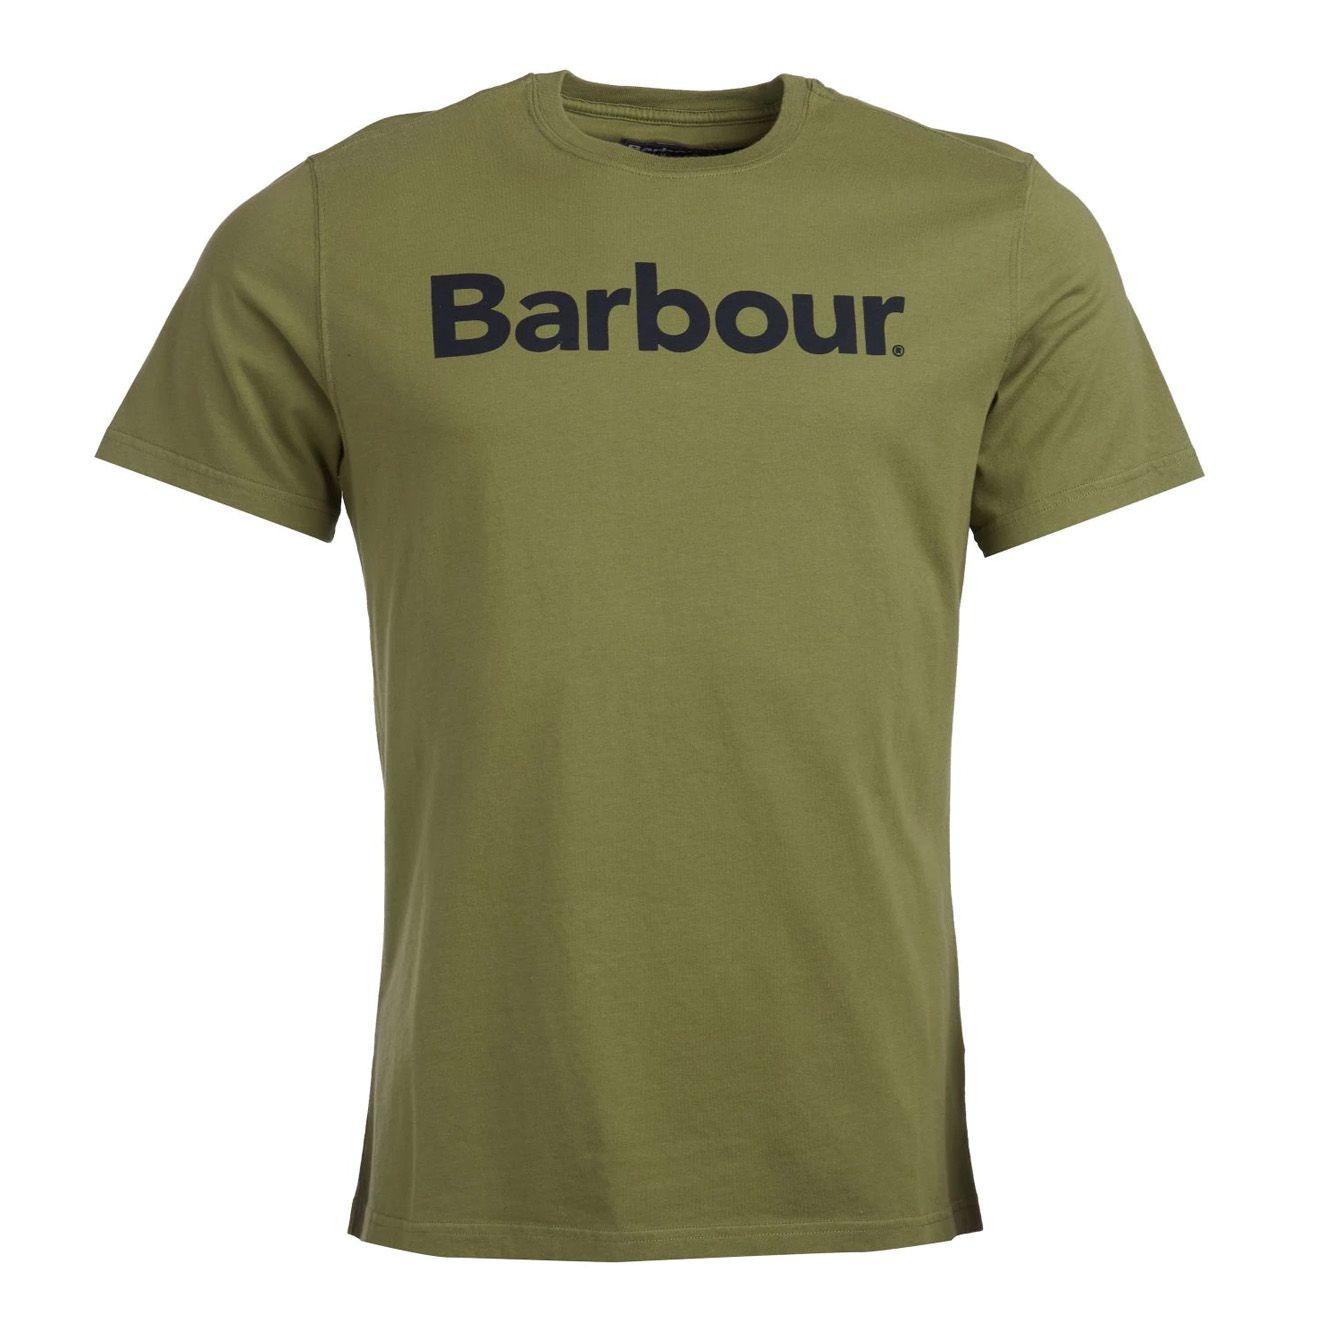 Barbour Logo - Barbour Logo T-Shirt Burnt Olive